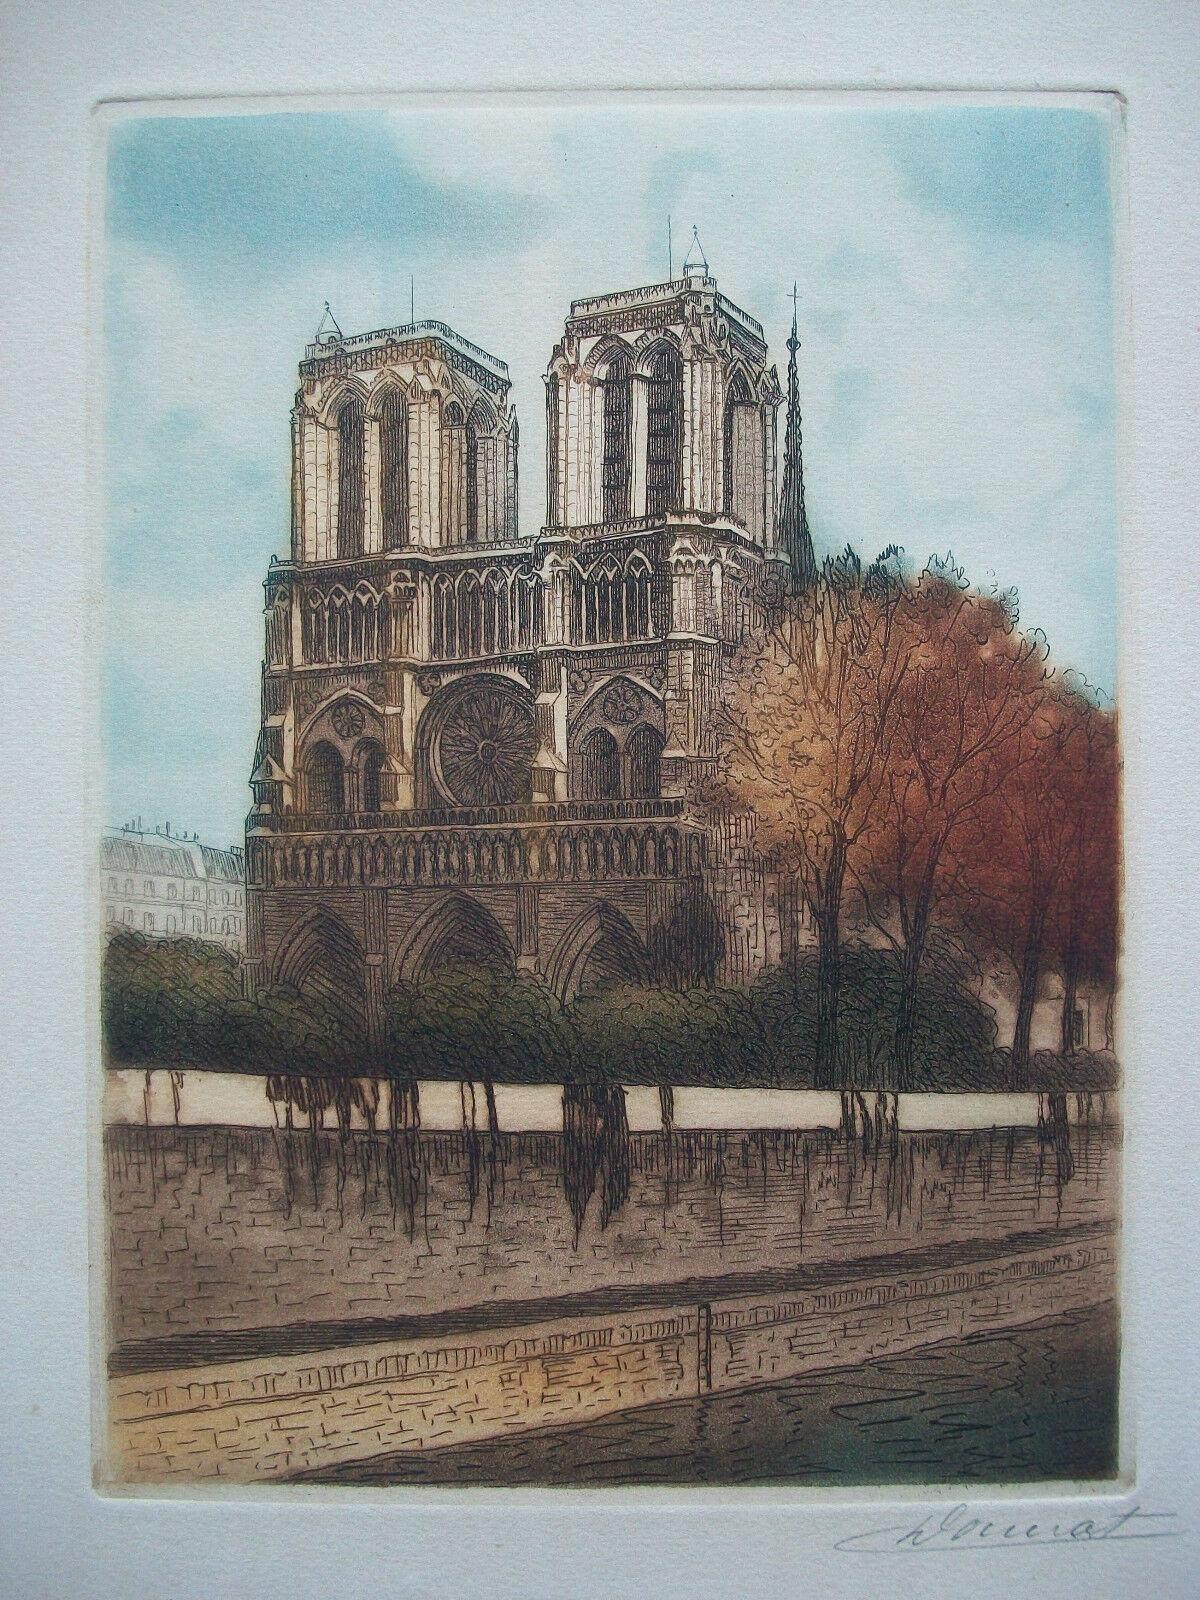 DOURAT - 'Notre-Dame No. 1' - Antiker sepiafarbener Kupferstich auf schwerem cremefarbenem Papier - Kathedrale Notre Dame in Paris - signiert und betitelt - Frankreich - um 1910.

Ausgezeichneter antiker Zustand - leicht stockfleckig - kein Verlust